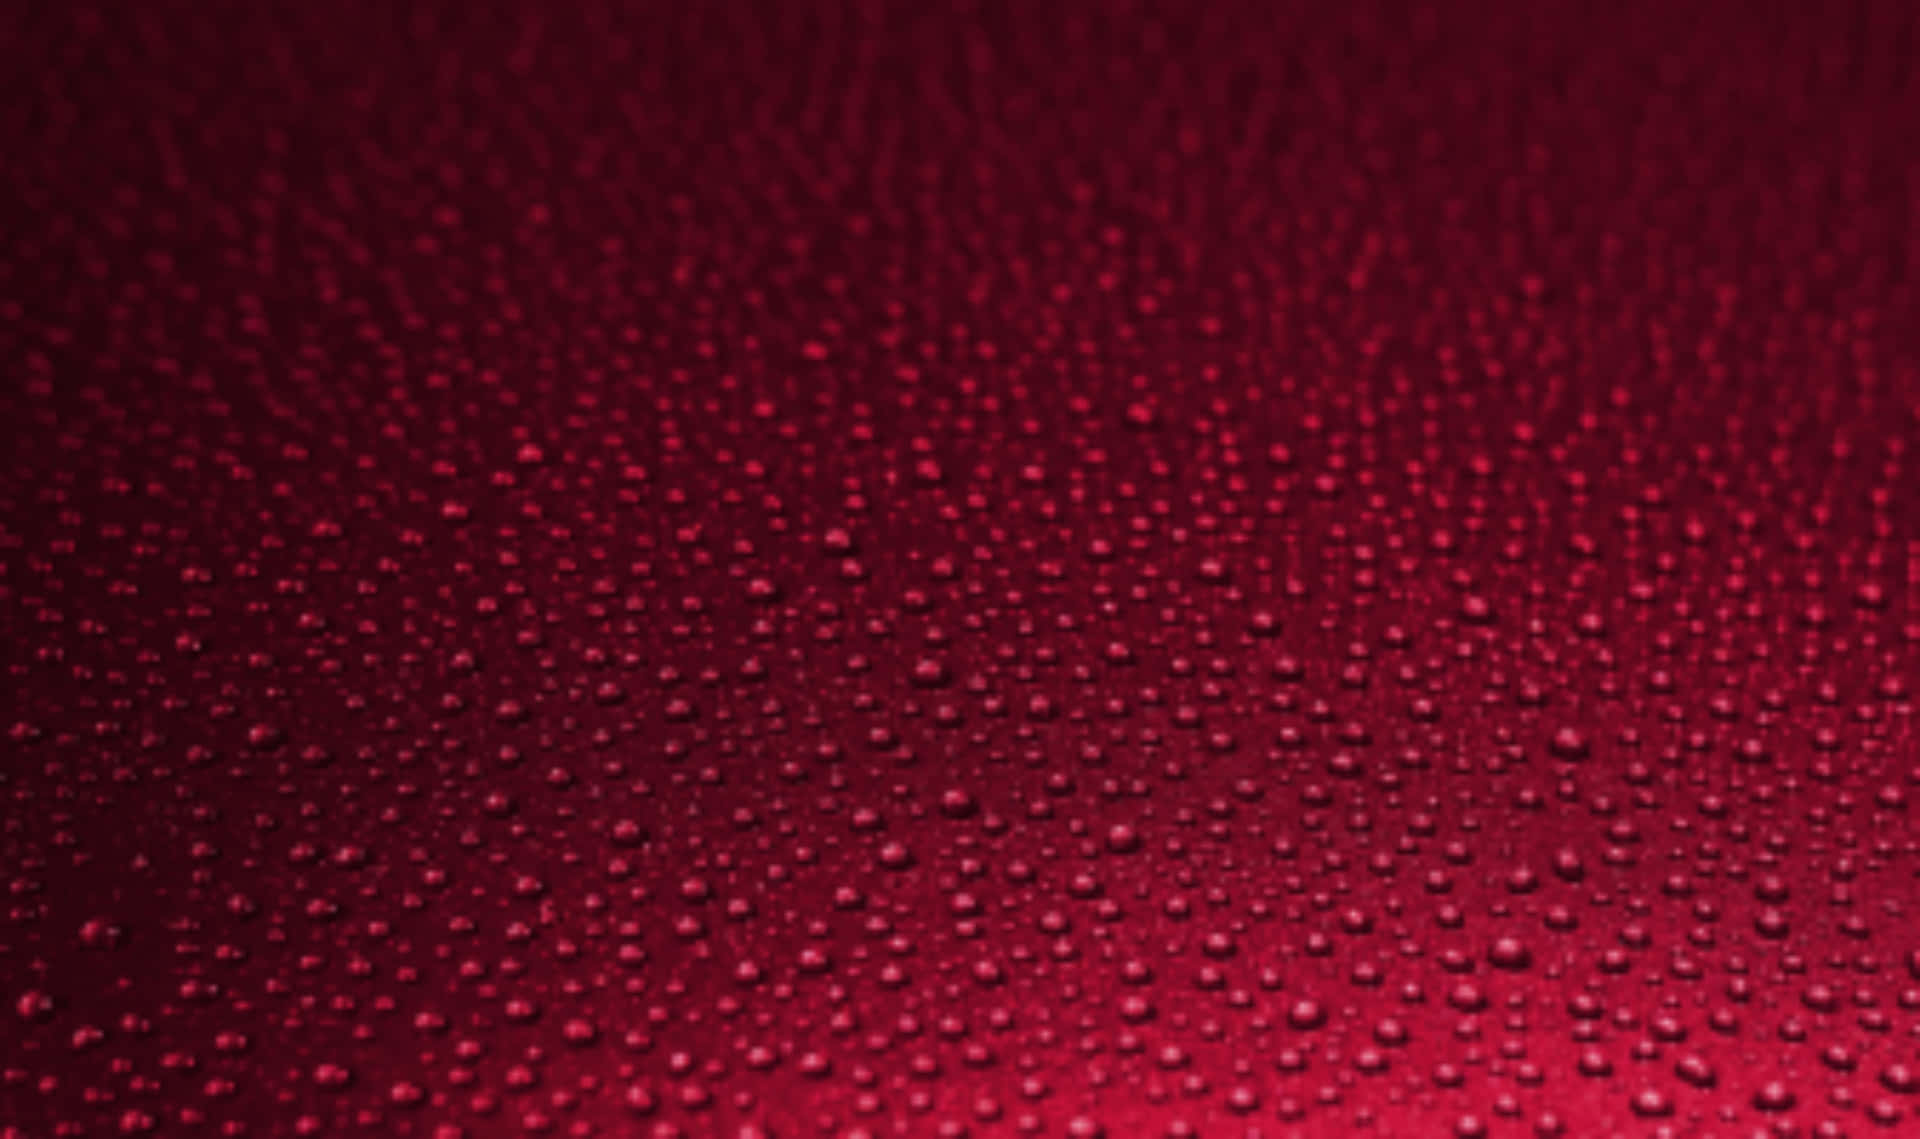 Immaginedi Sfondo Rossa Con Texture A Gocce D'acqua Rosse.